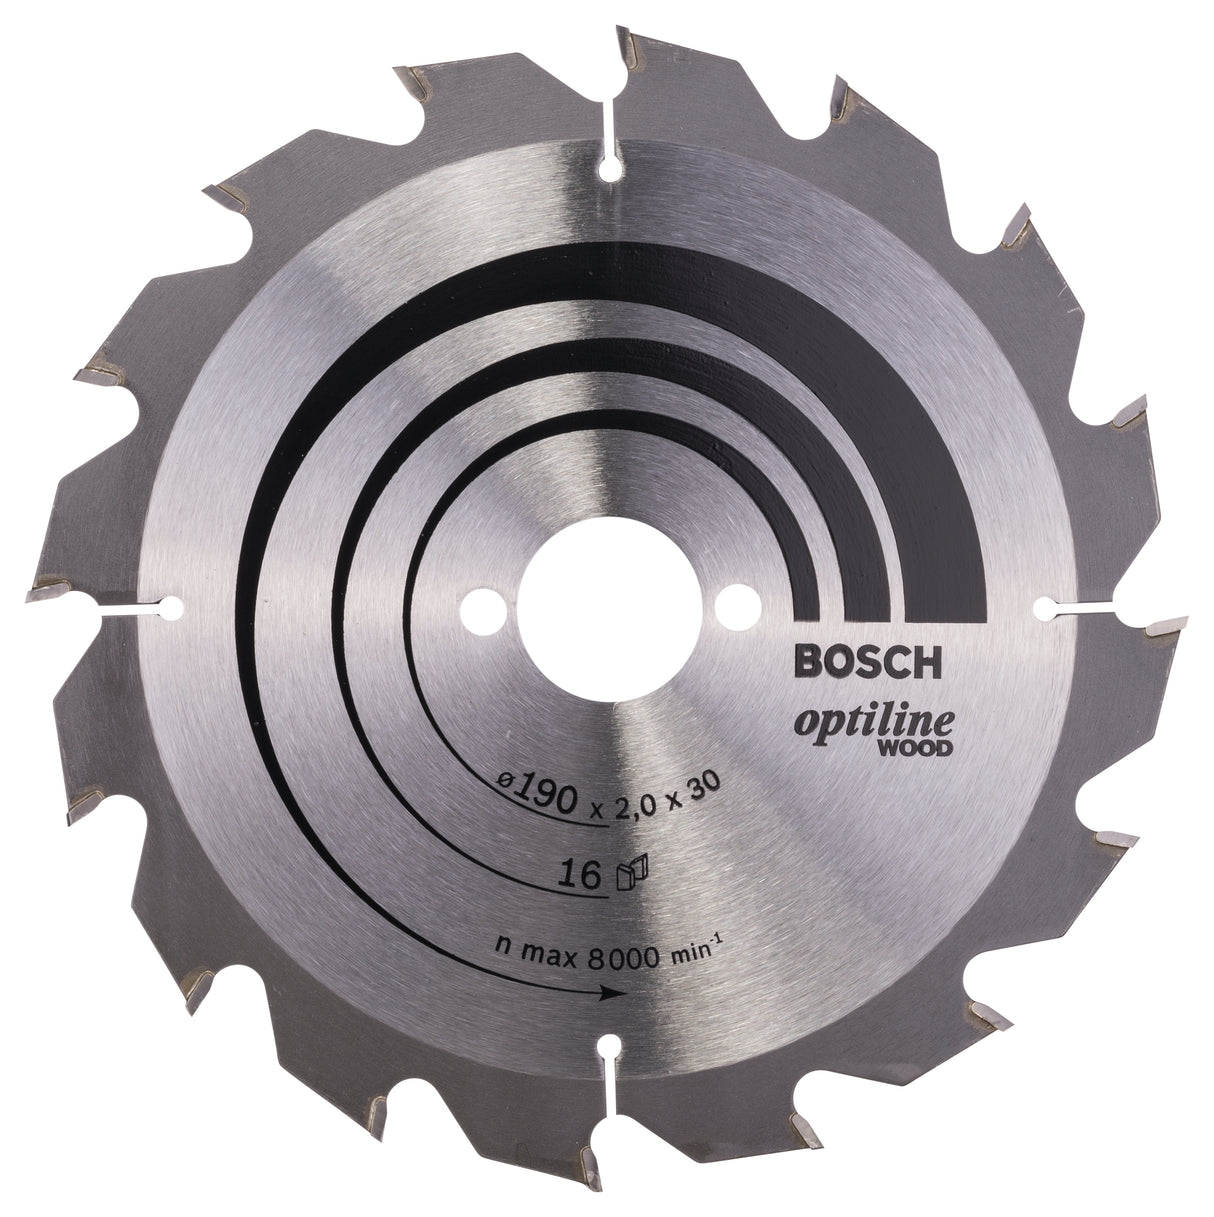 Bosch Professional Optiline Wood Circular Saw Blade - 190 x 30 x 2.0 mm, 16 Teeth